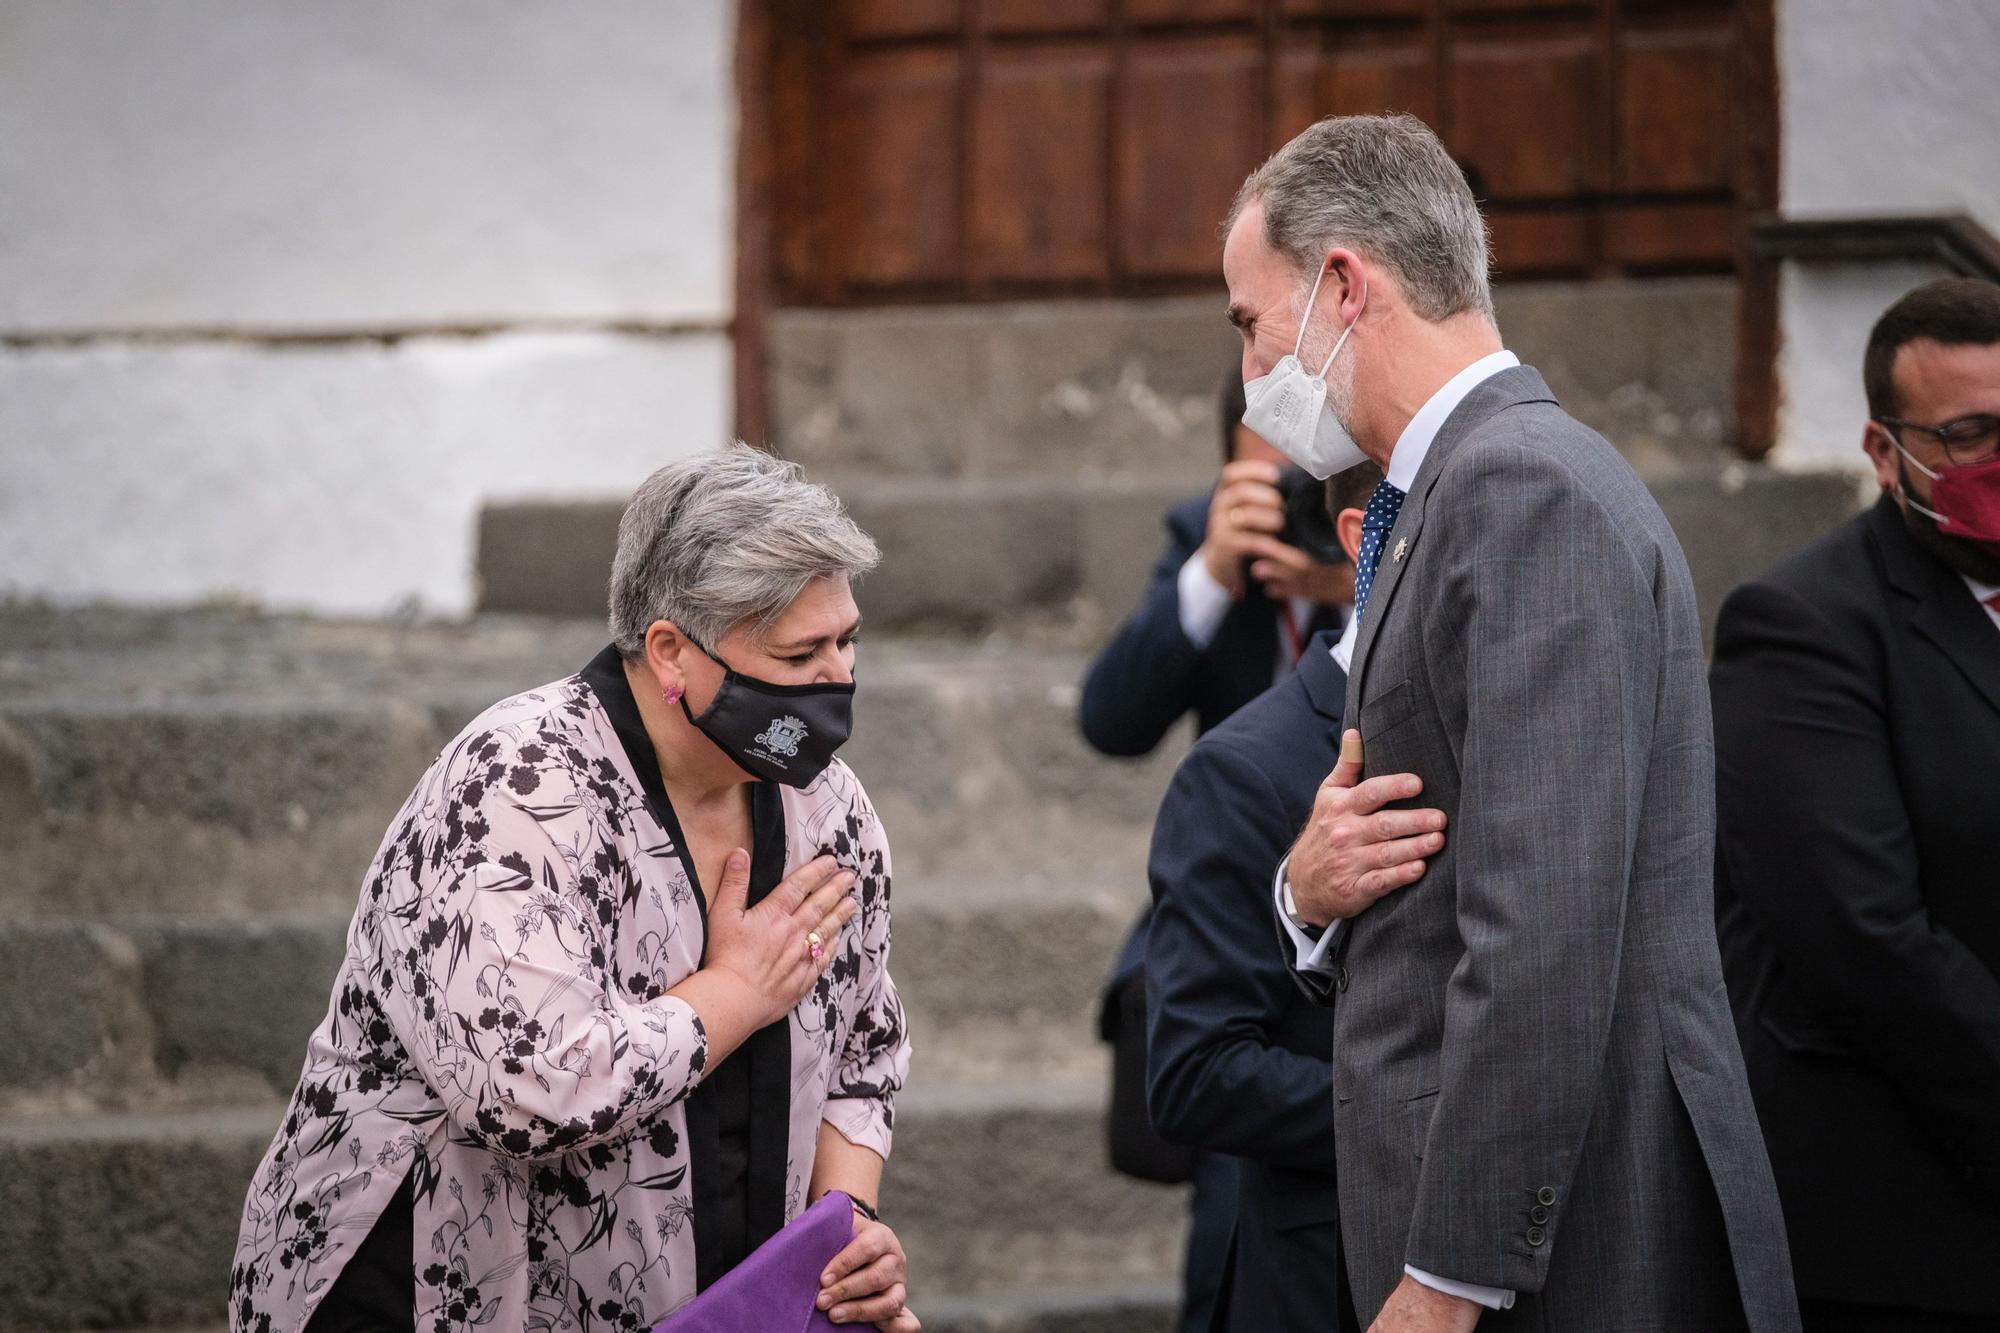 Visita del Rey y los presidentes de las comunidades a La Palma al acto de homenaje a los palmeros